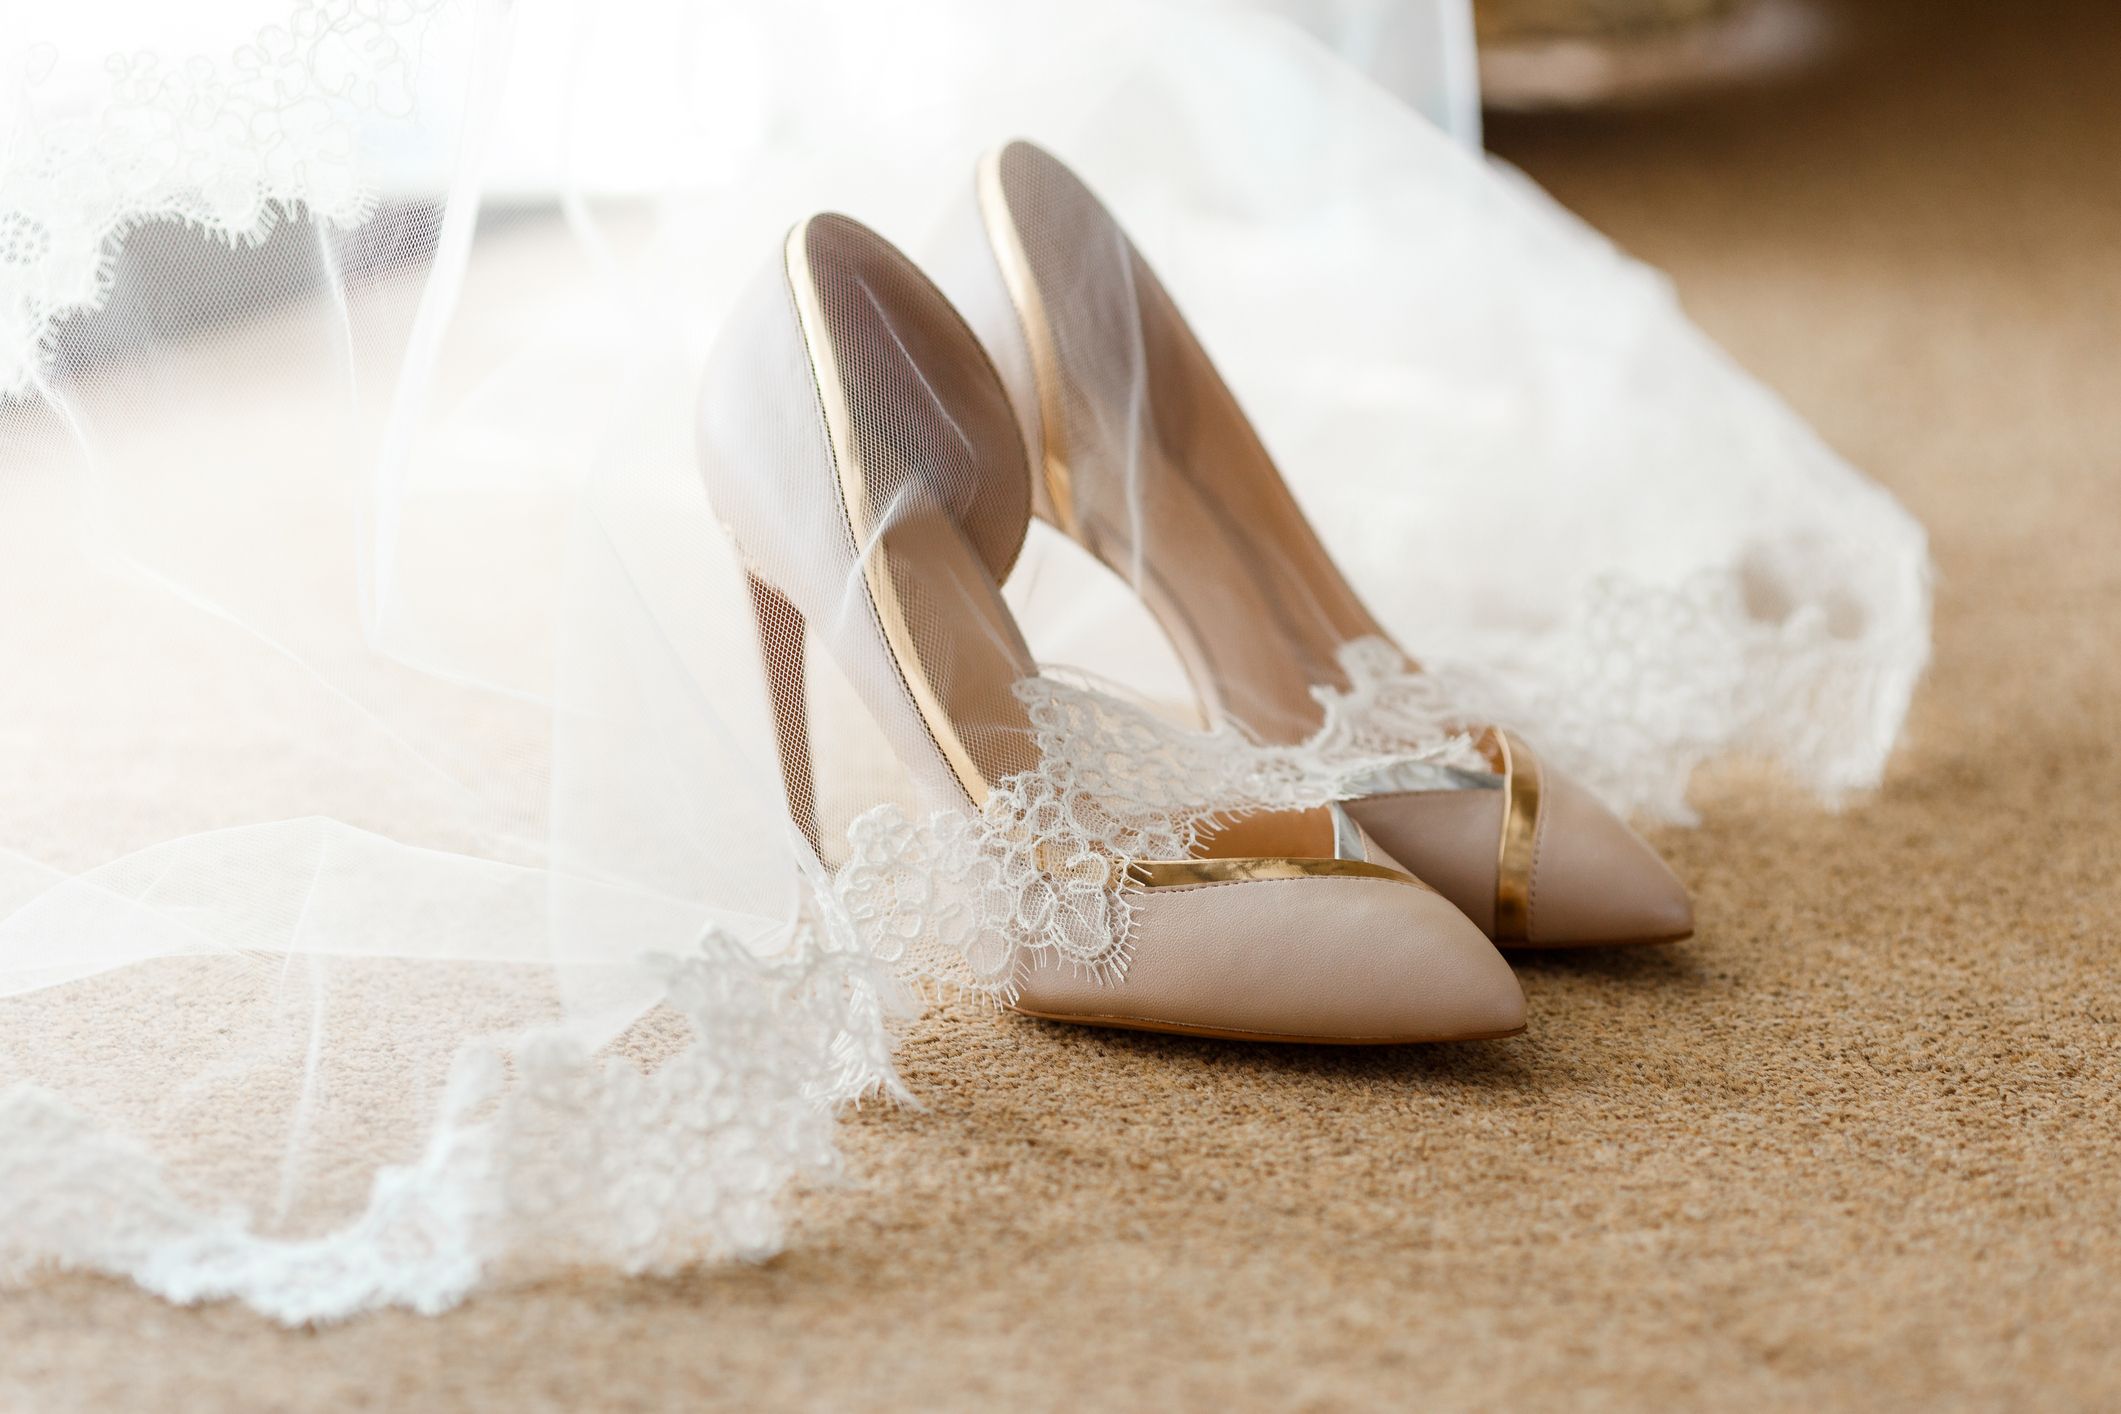 How to Break in Wedding Shoes